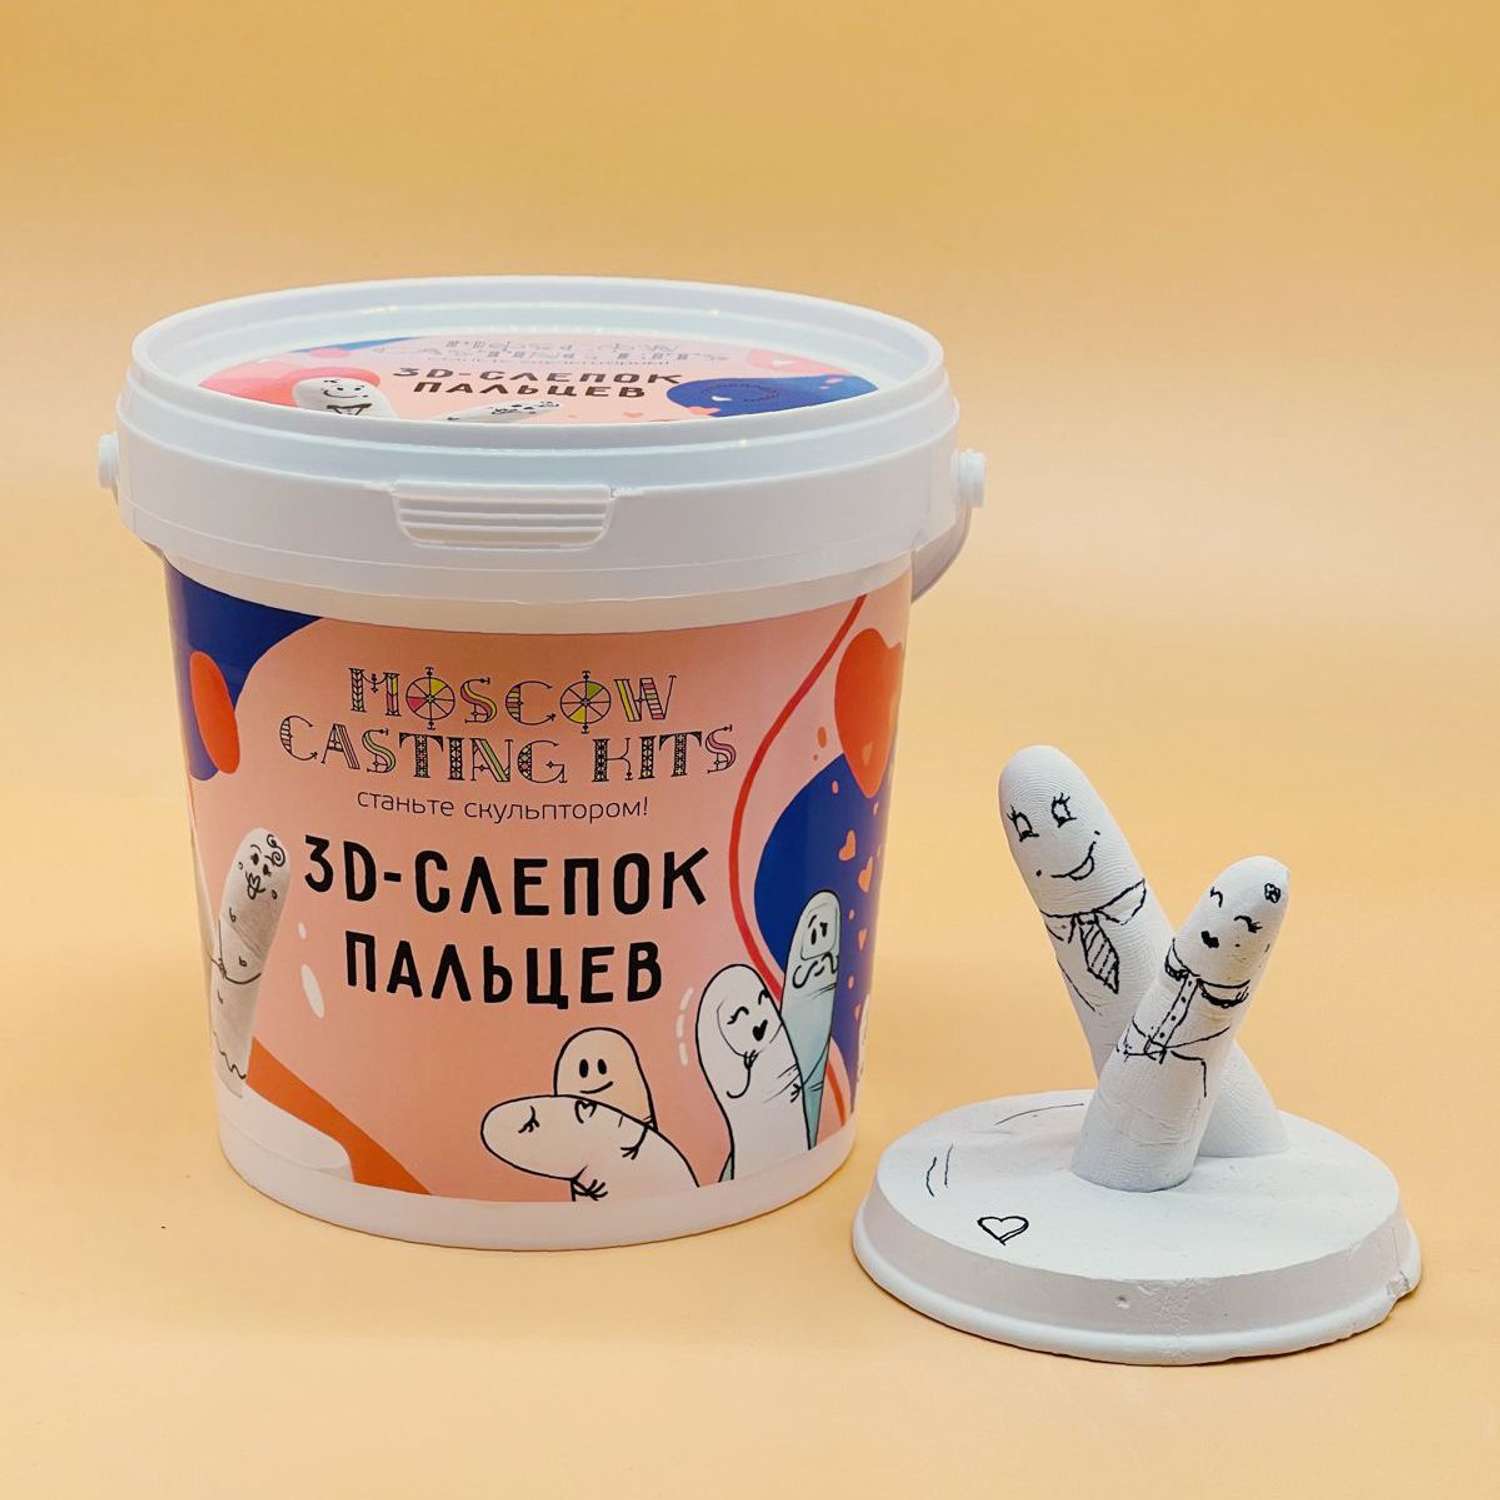 Подарочный набор Moscow Casting Kits 3D-слепок пальцев - фото 2